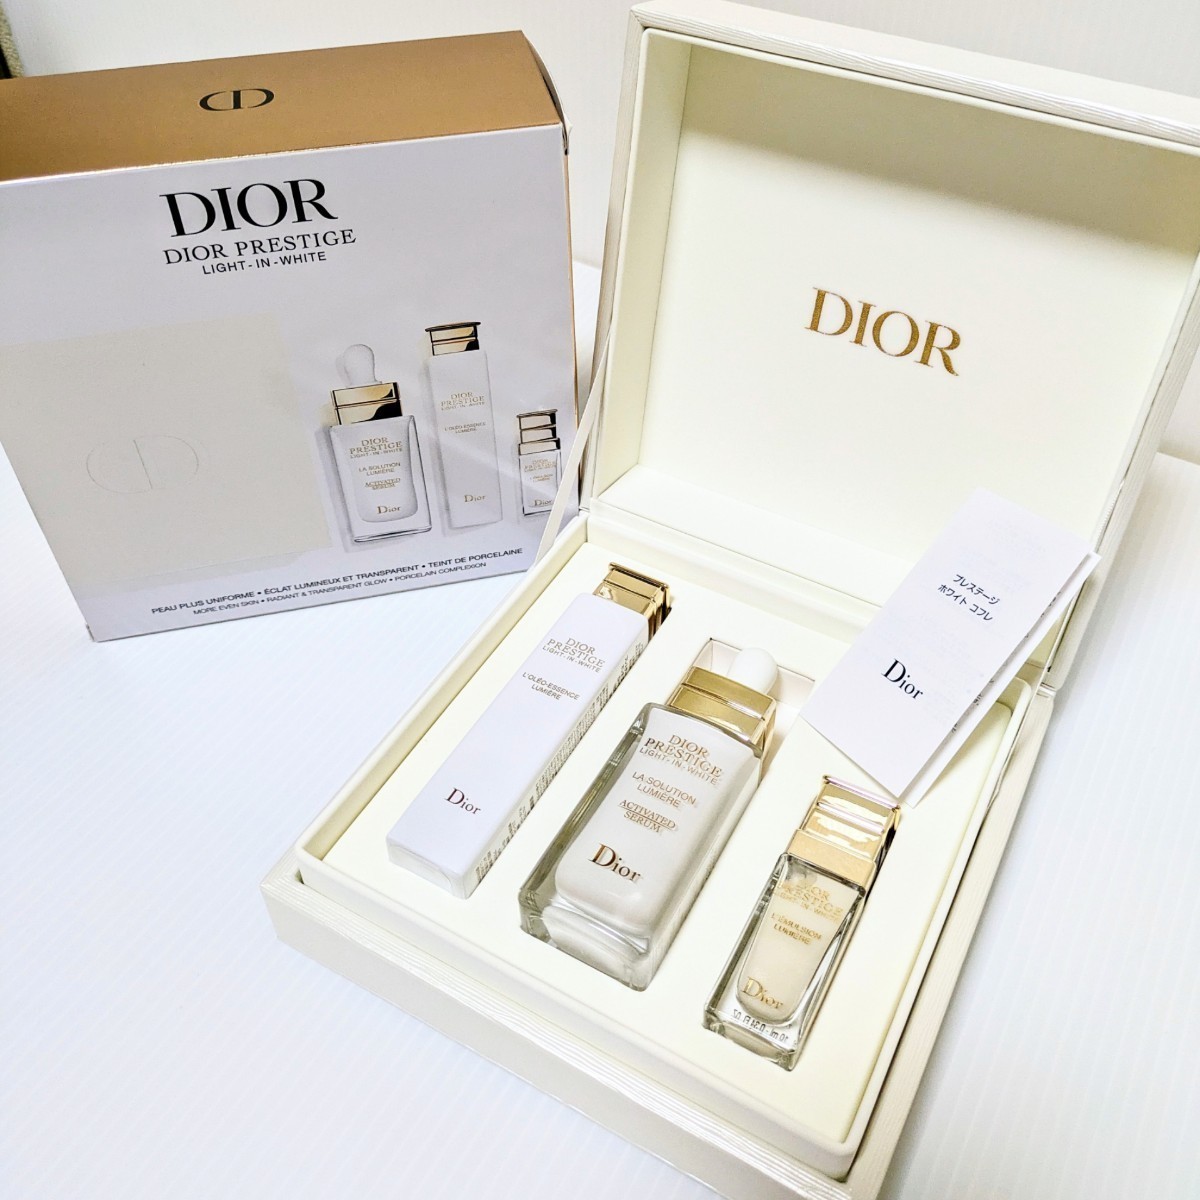 Dior ディオール プレステージ ホワイト コフレ ラソリューションルミエールライトインセラム オレオエッセンスローション エマルジョン